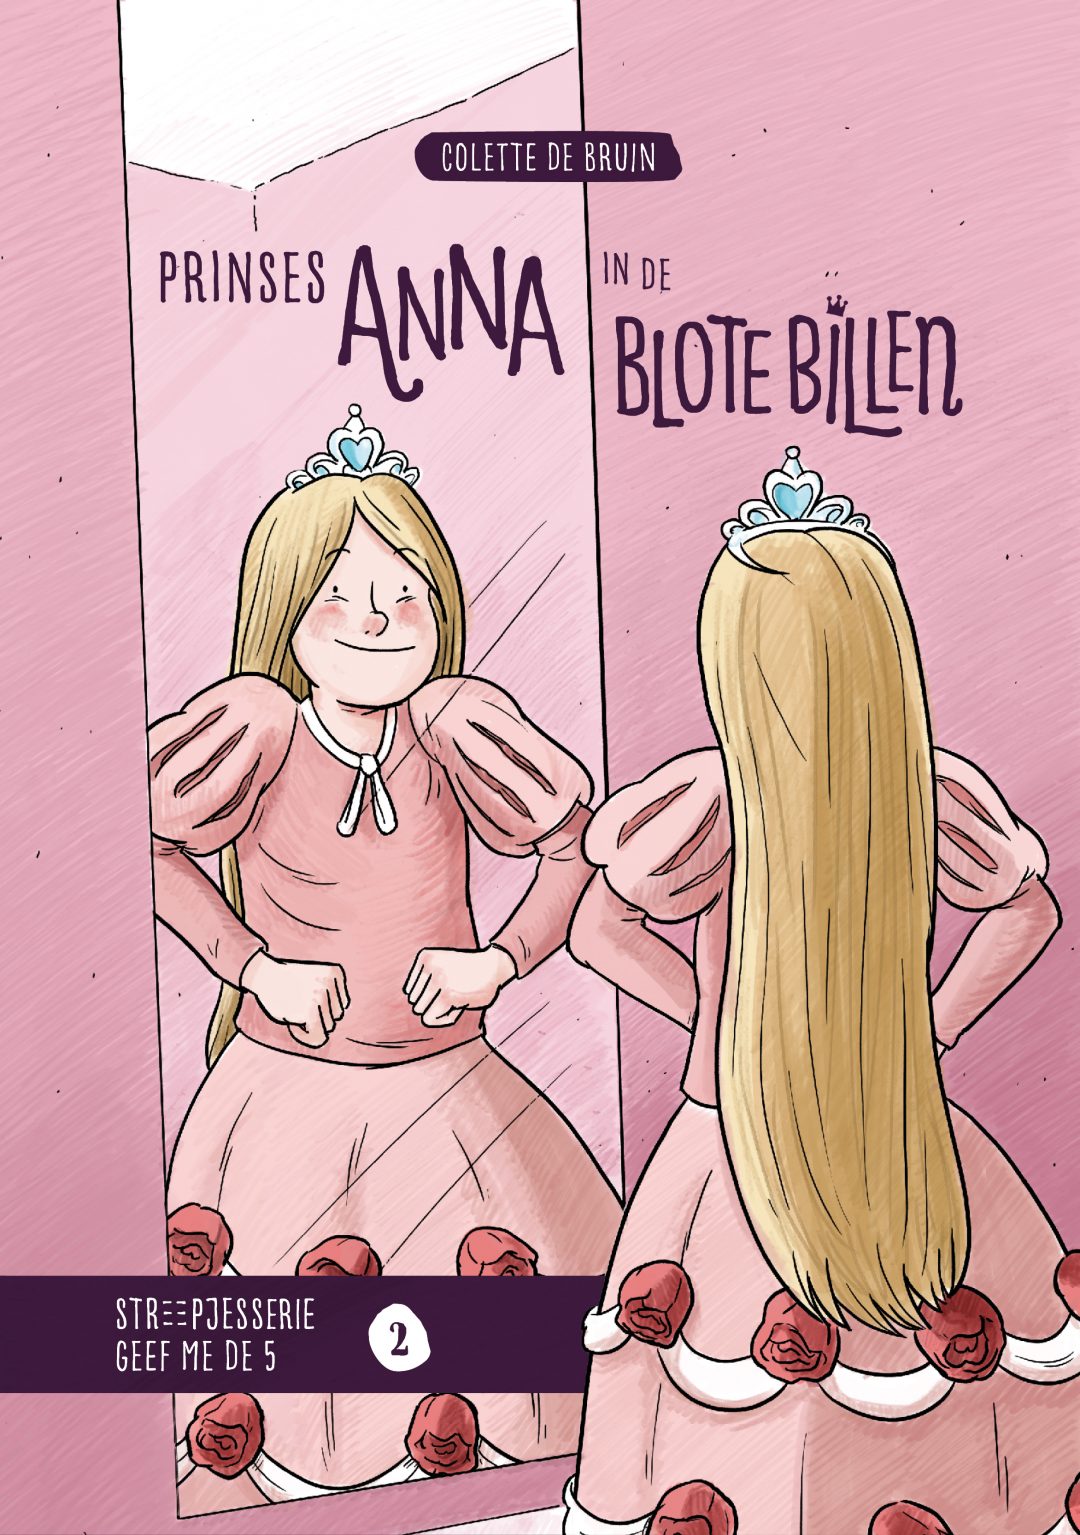 Cover boek Prinses Anna in de blote billen